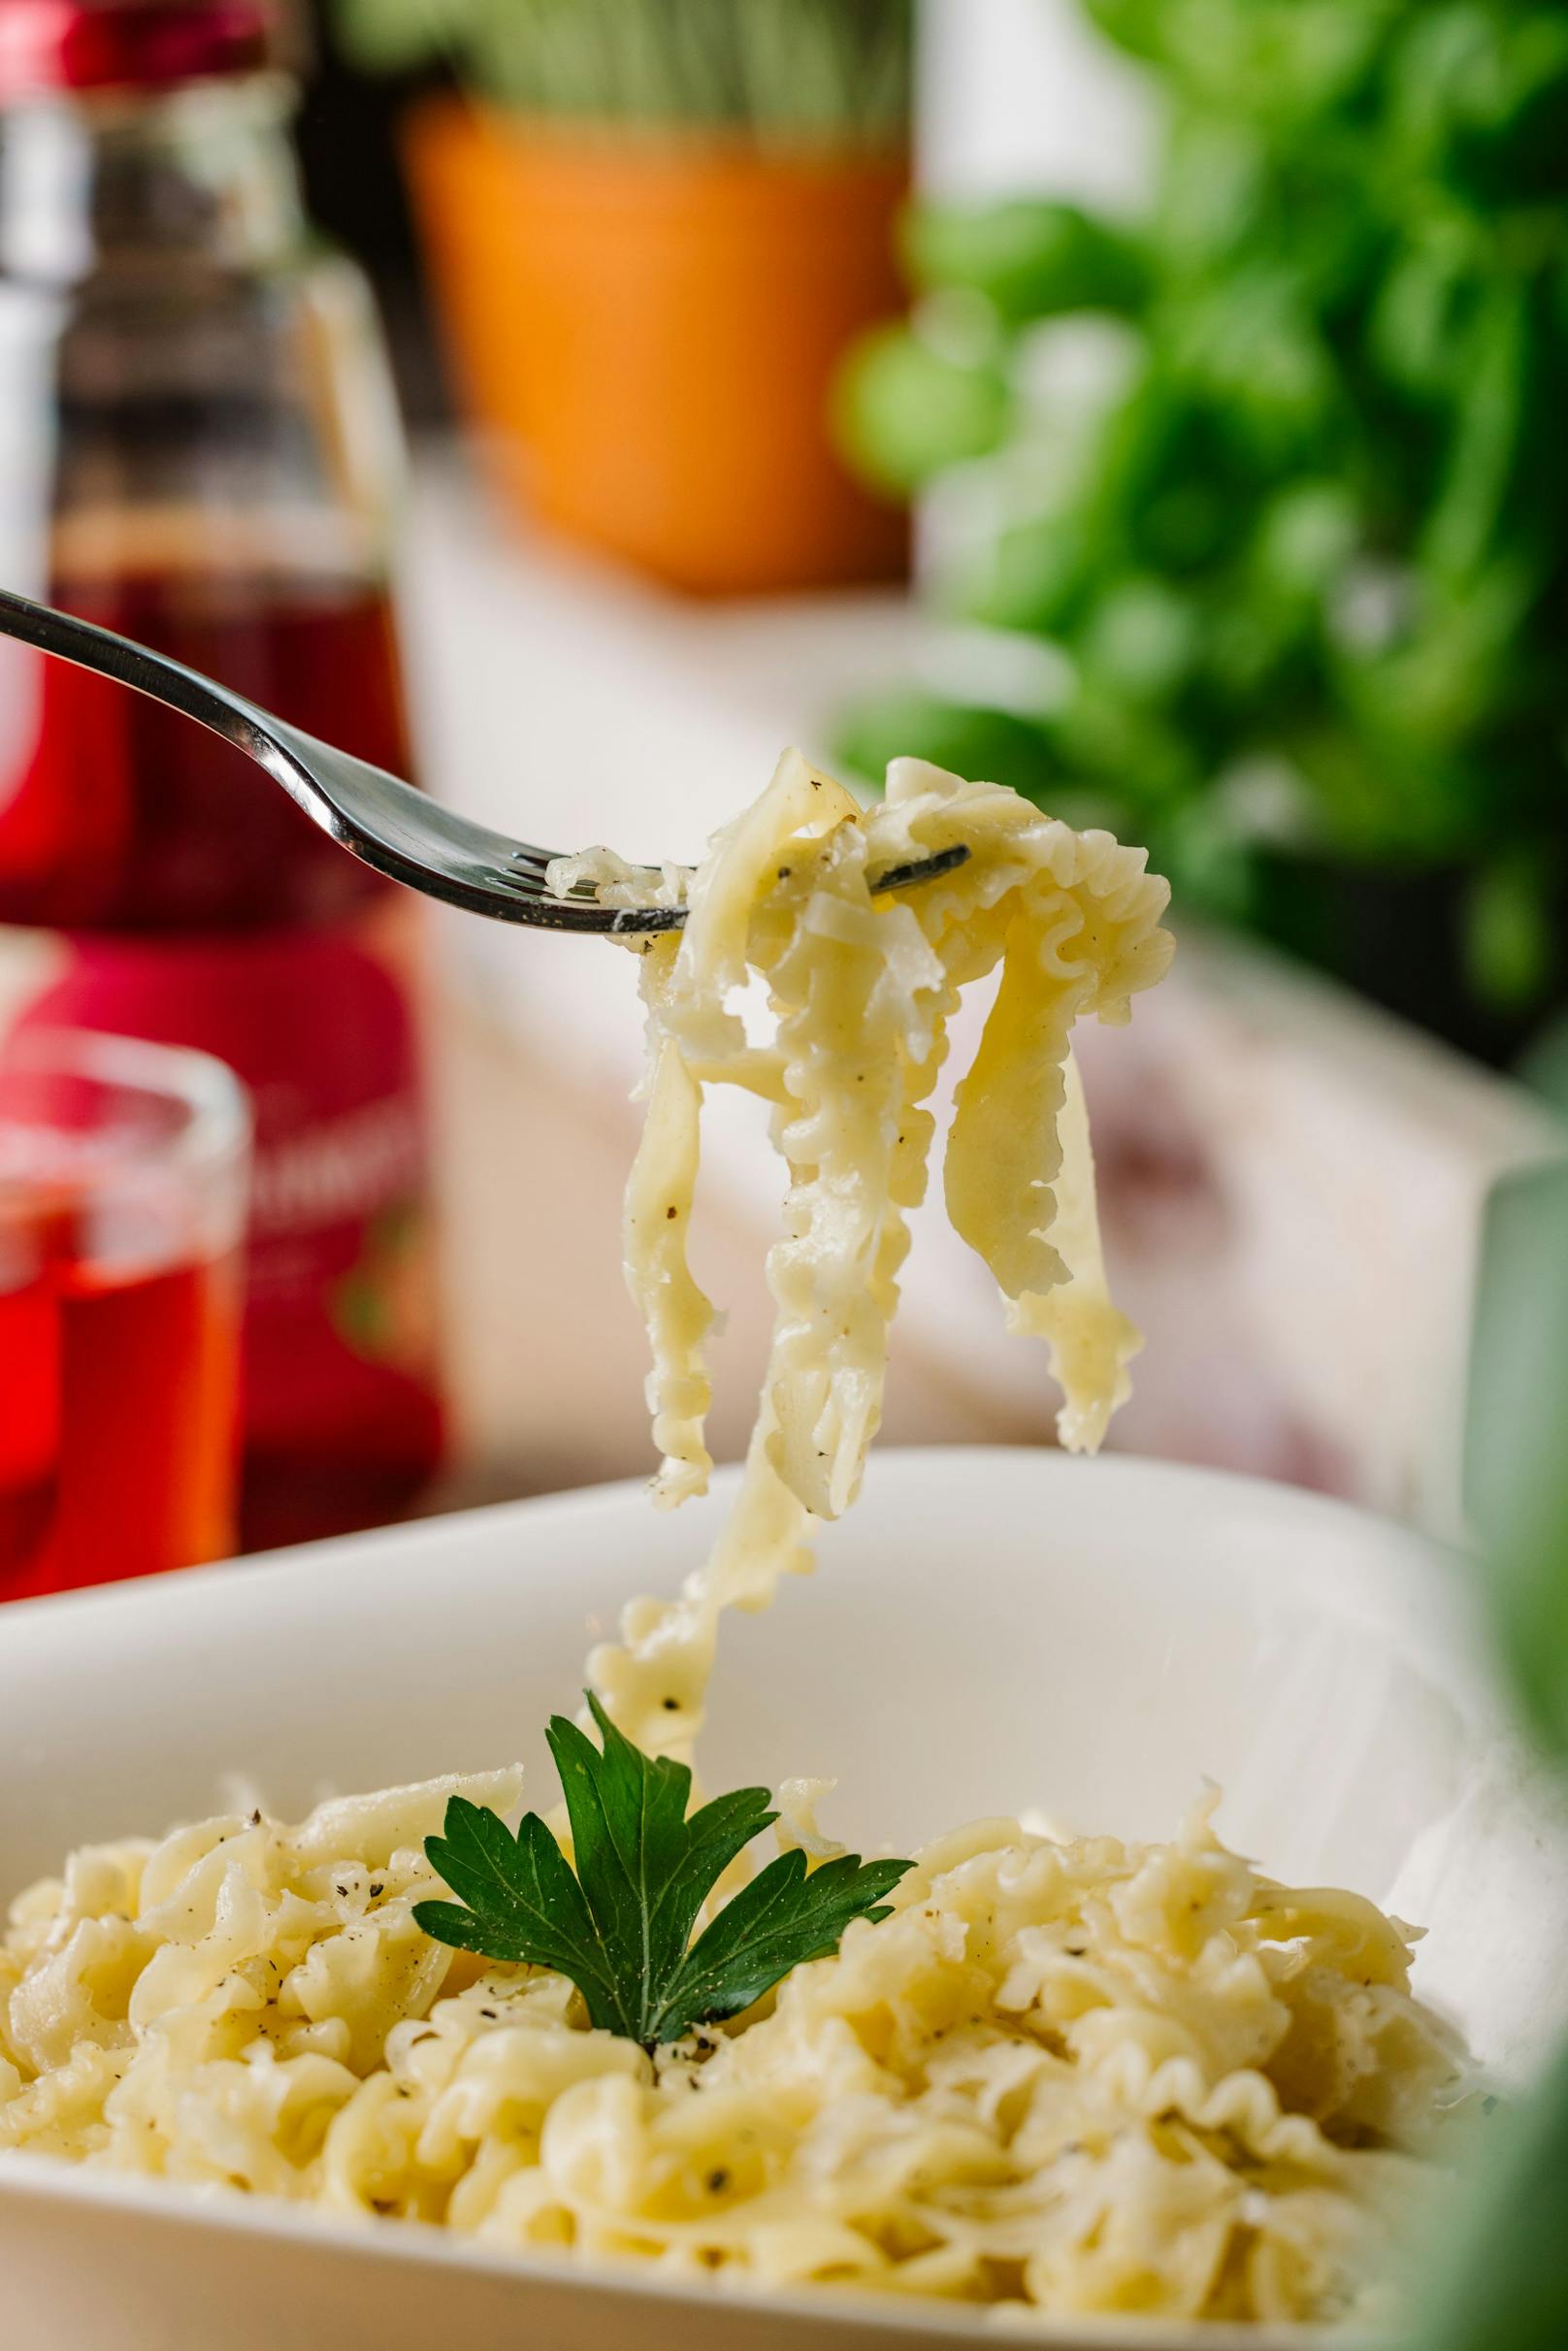 Zudem soll der neue Pasta-Klassiker Cacio e Pepe – der Name leitet sich von den beiden Zutaten Käse und Pfeffer ab – zu noch mehr Pasta-Begeisterung beitragen.